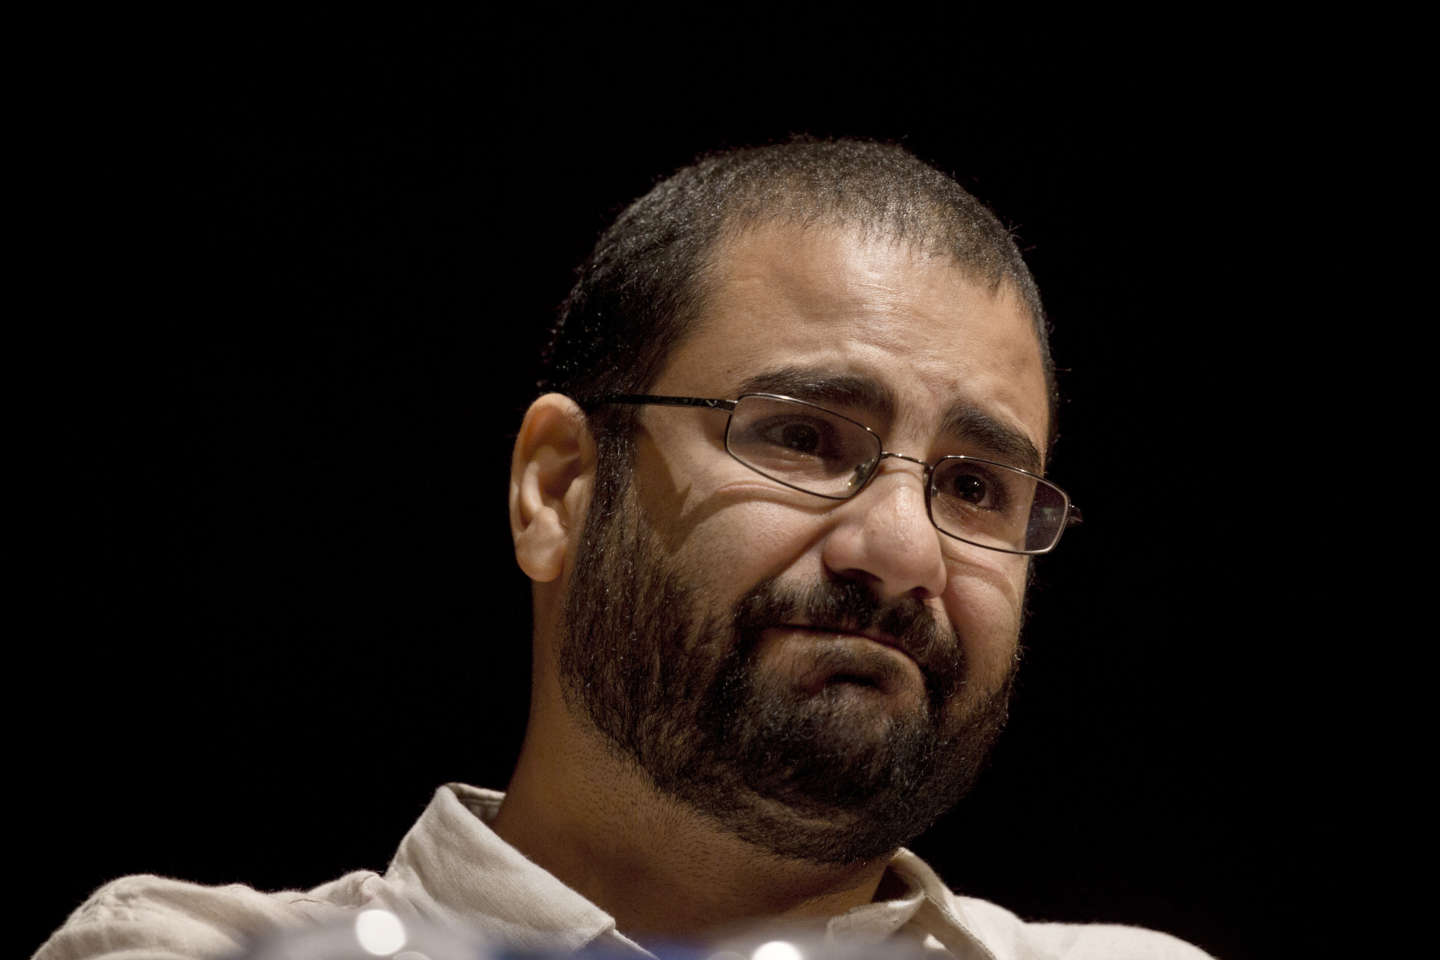 Le militant Alaa Abdel Fattah donne une « preuve de vie » en prison, selon sa sœur